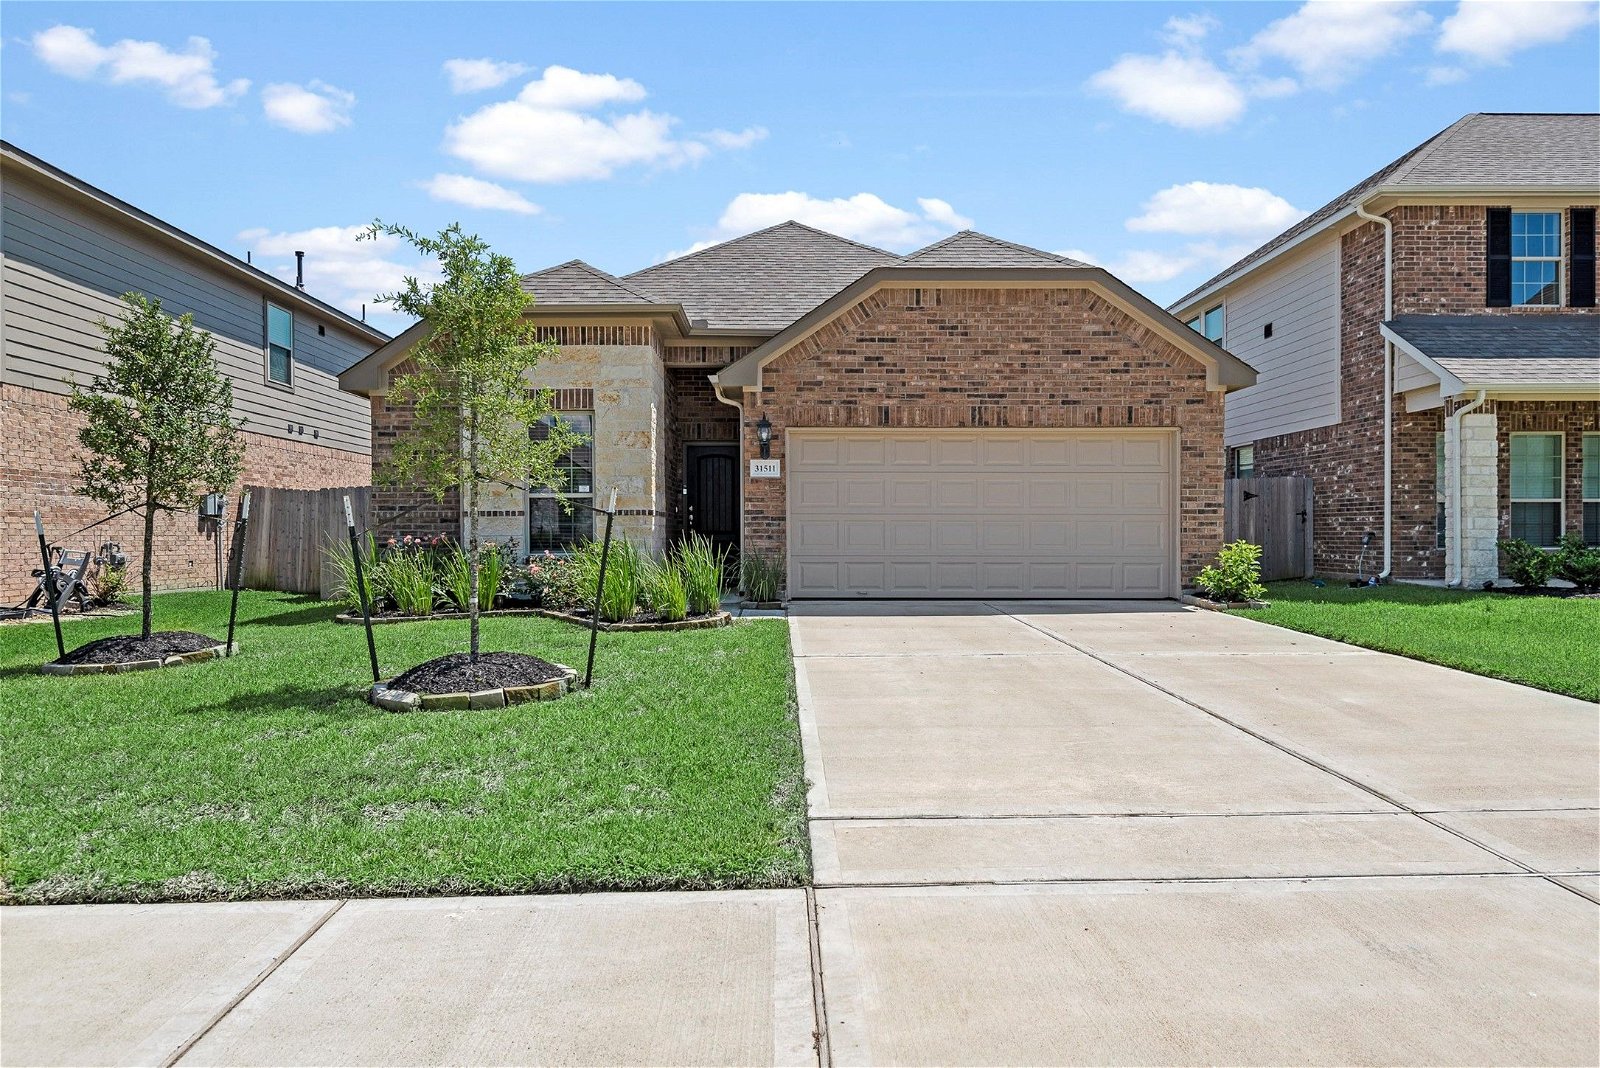 Real estate property located at 31511 Elkcreek Bend, Harris, Hockley, TX, US